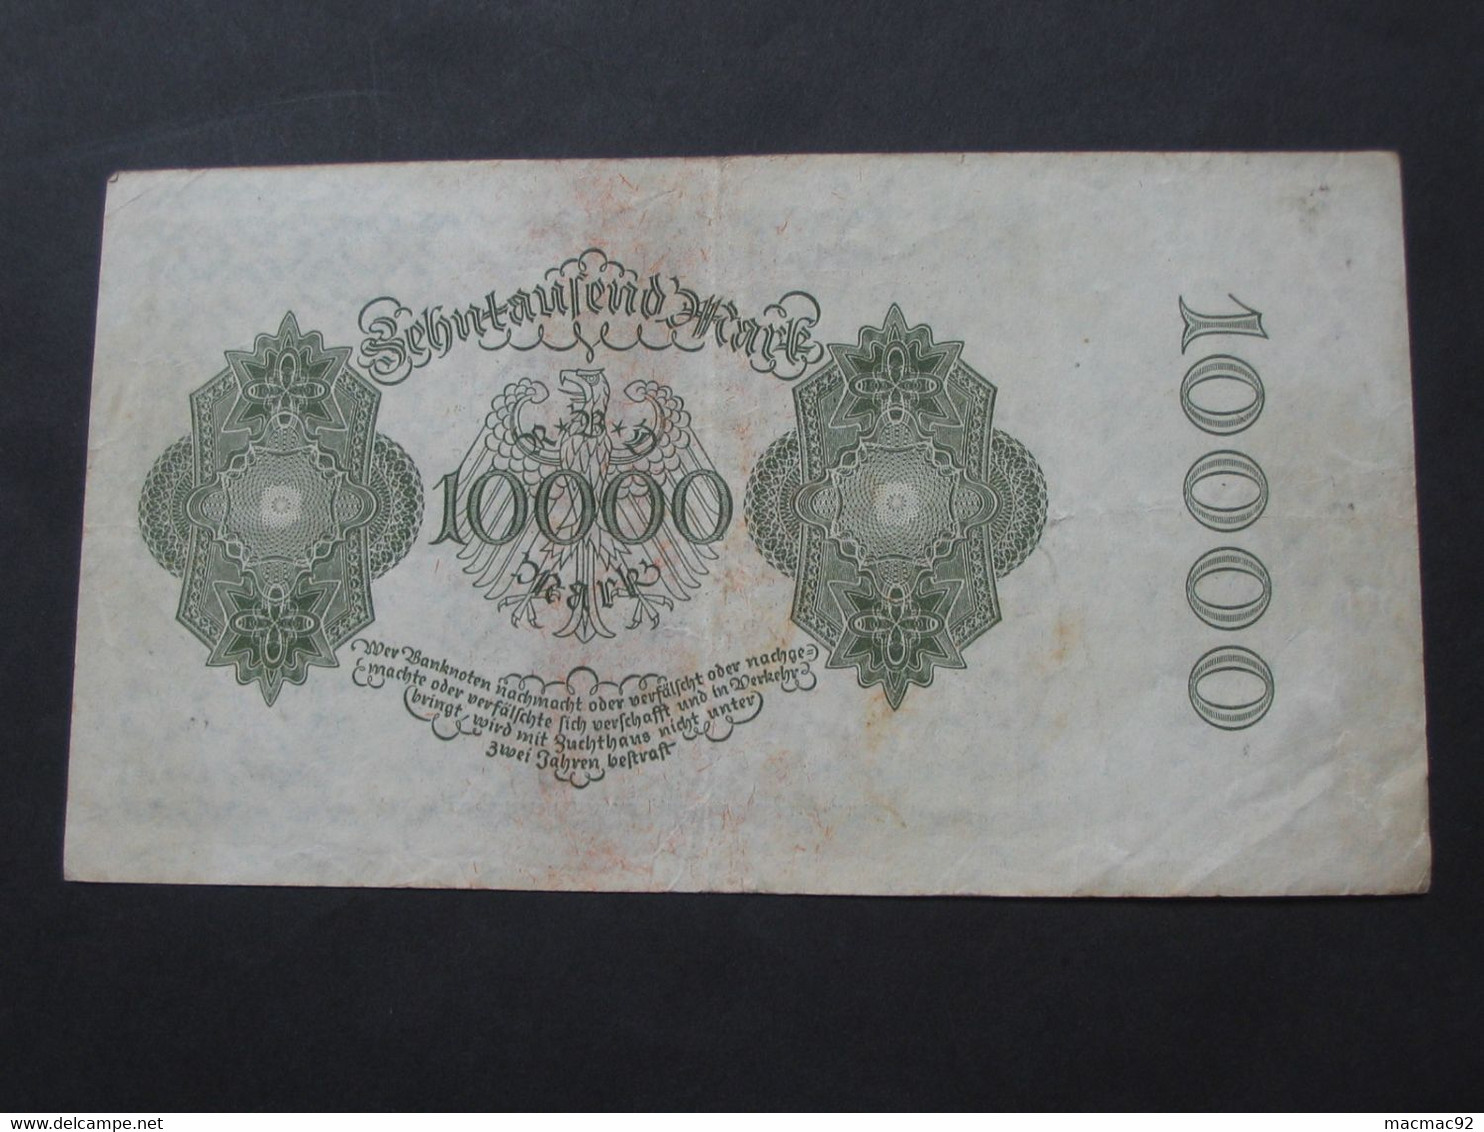 5000 Funftausend  Mark - Berlin 1922  Reichsbanknote - Germany **** EN ACHAT IMMEDIAT **** - 10.000 Mark